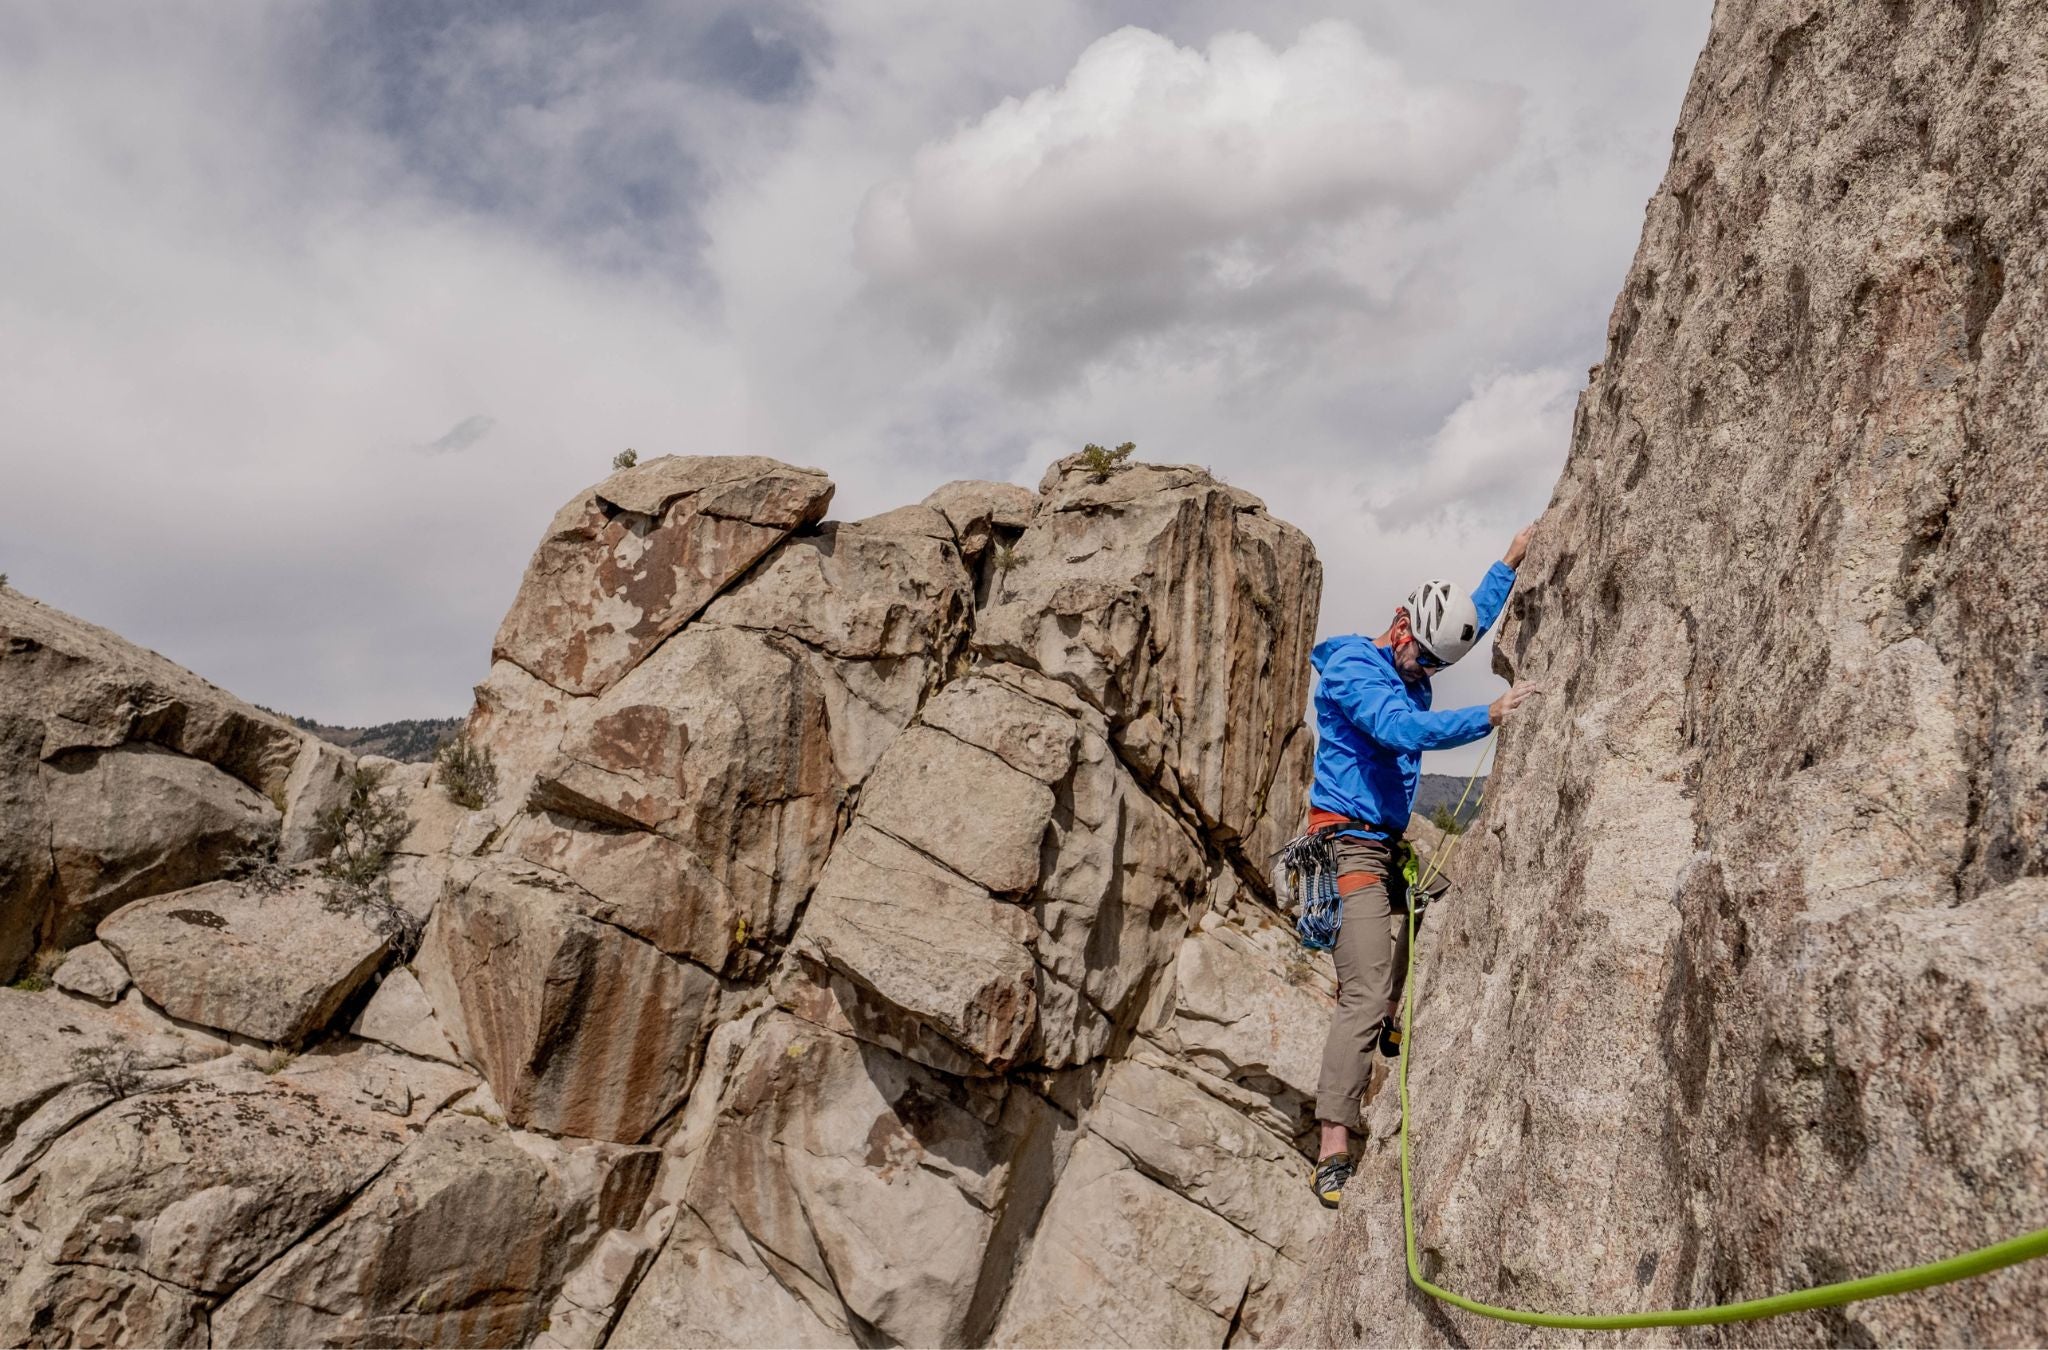 Matt Walker climbing an outdoor rock face